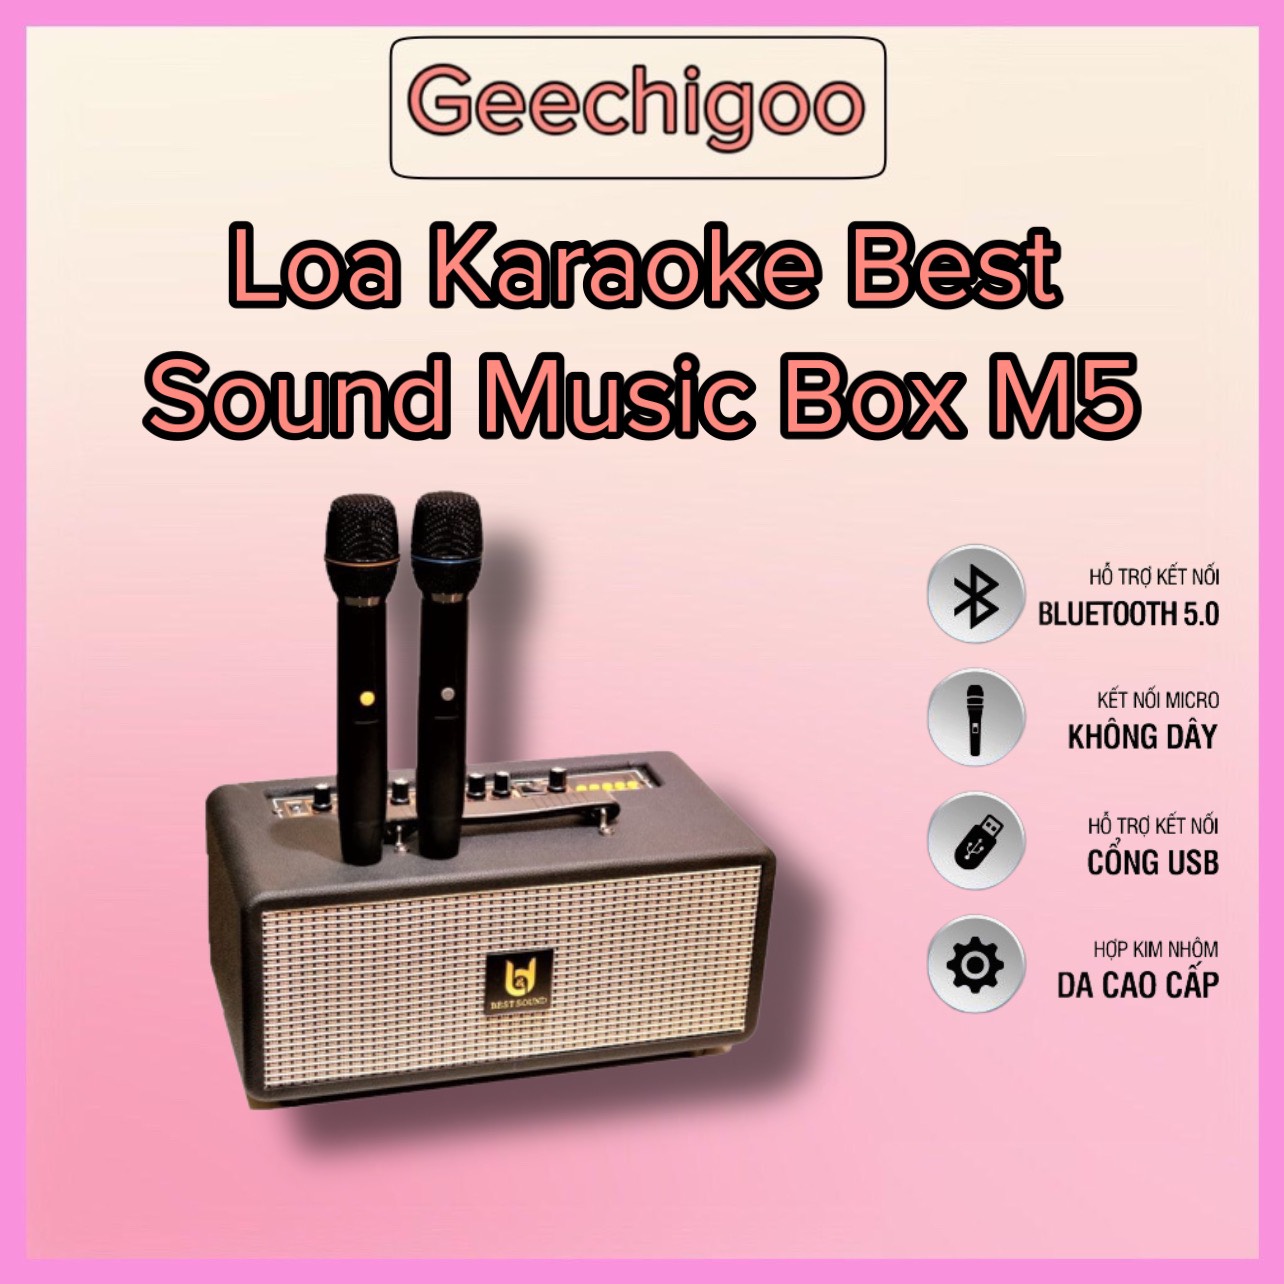 Loa Karaoke Xách Tay di động cao cấp chính hãng Best Sound M5 Musicbox